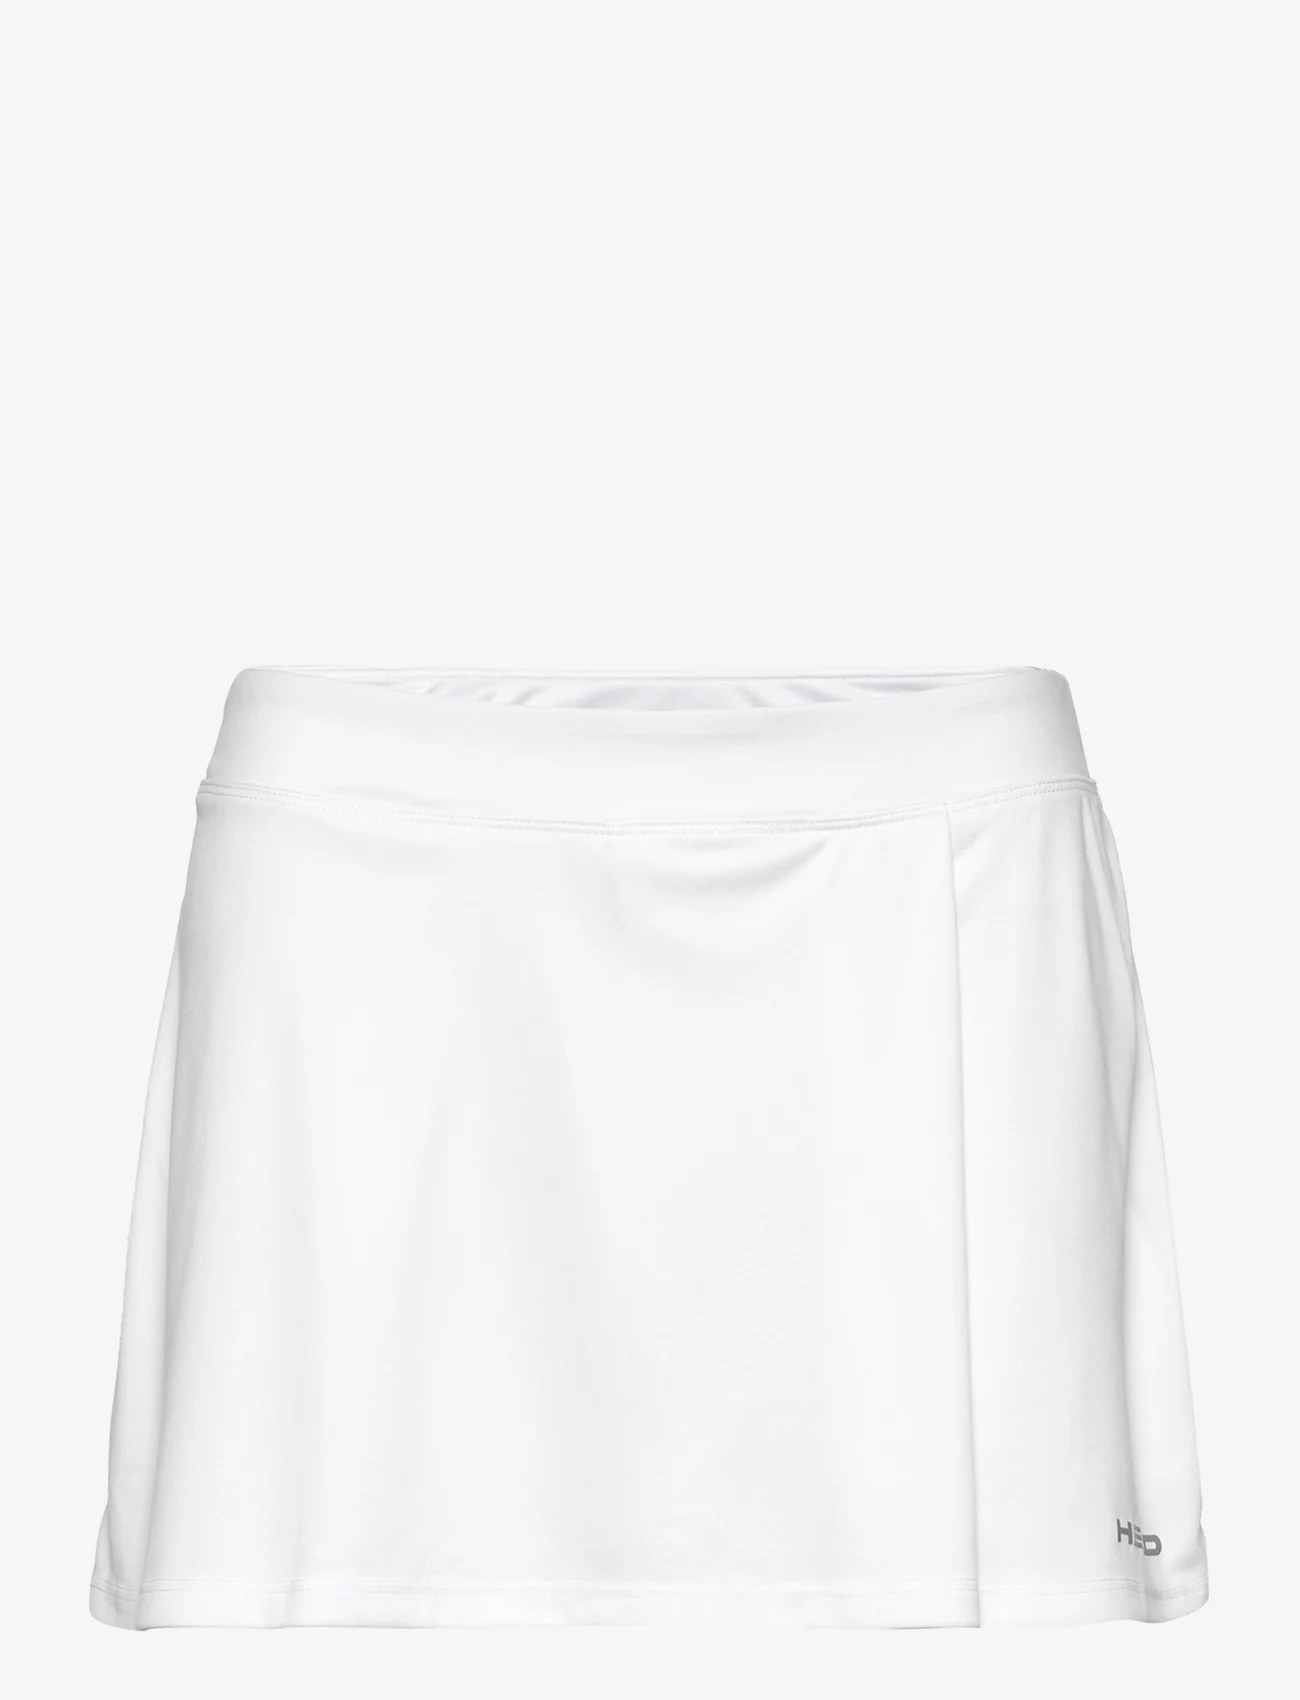 Head - EASY COURT Skort Women - skirts - white - 0